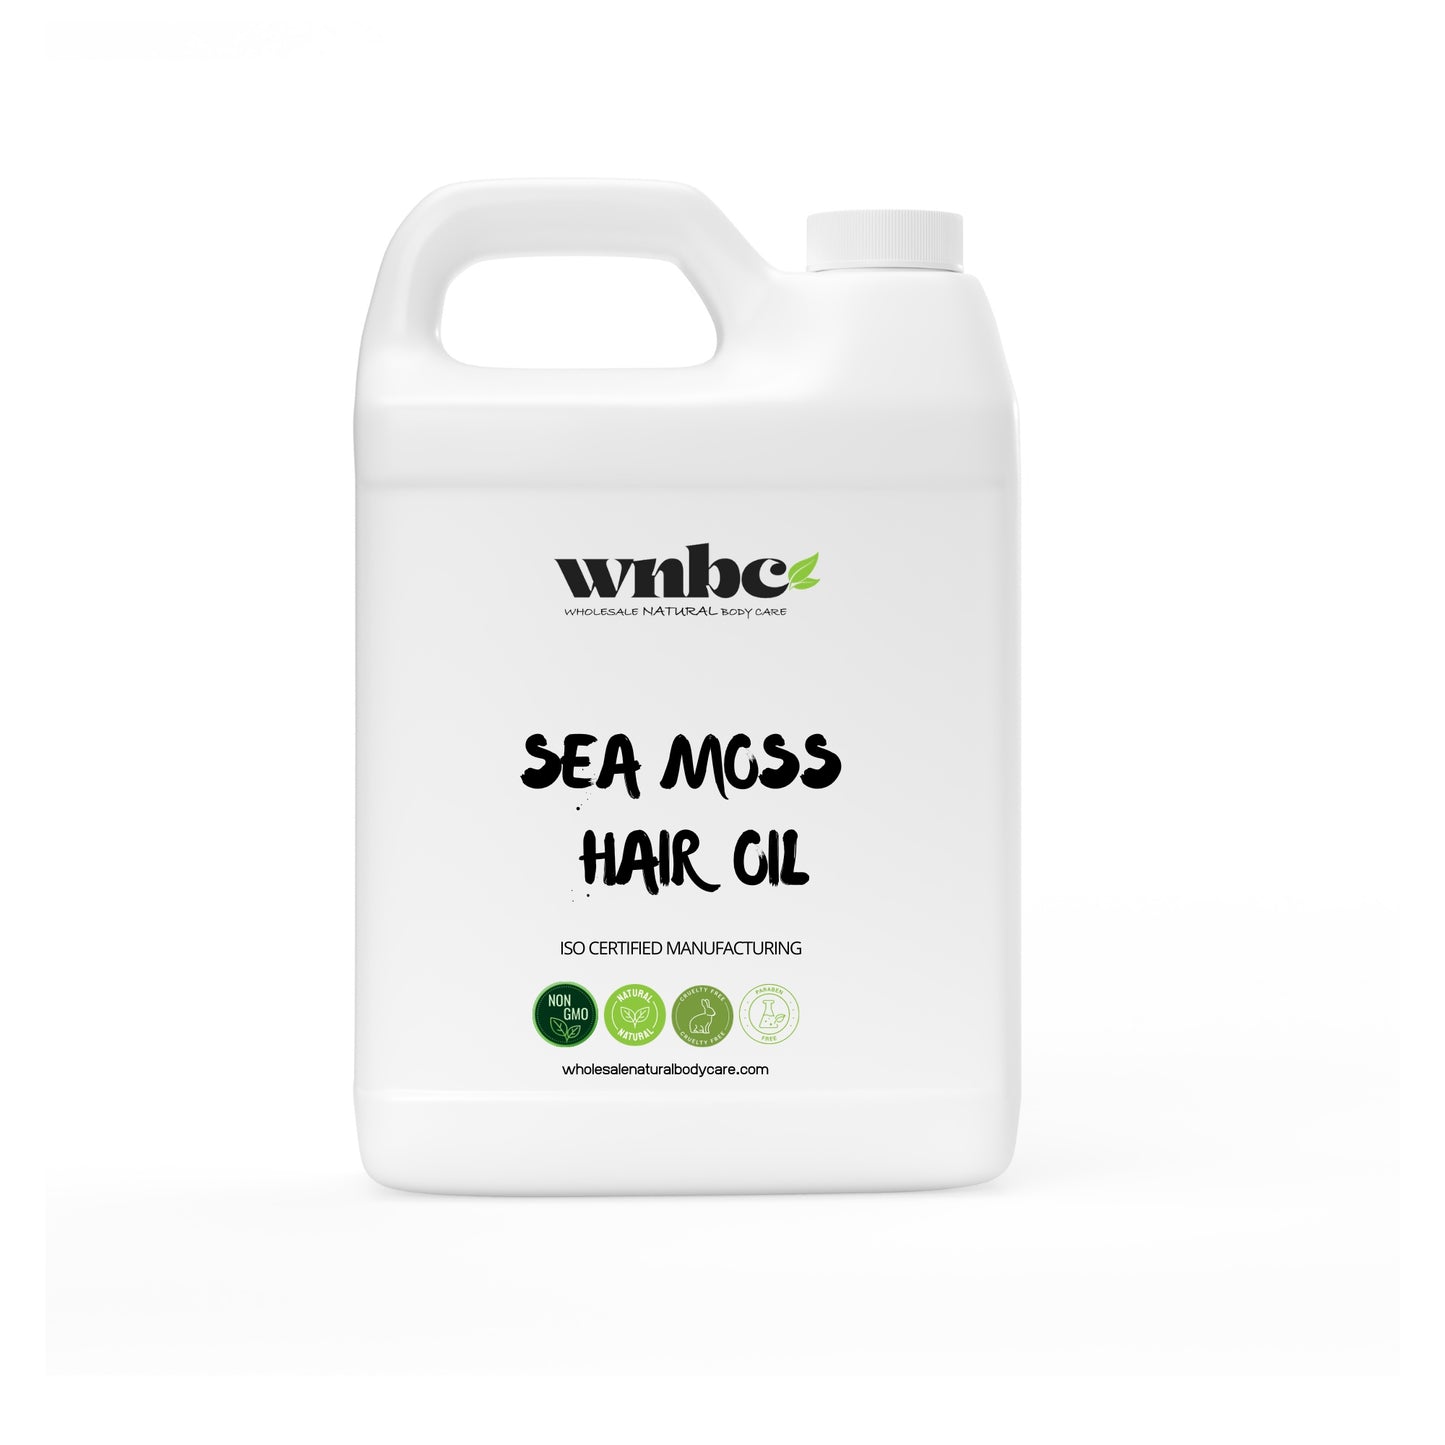 Sea Moss Hair Oil